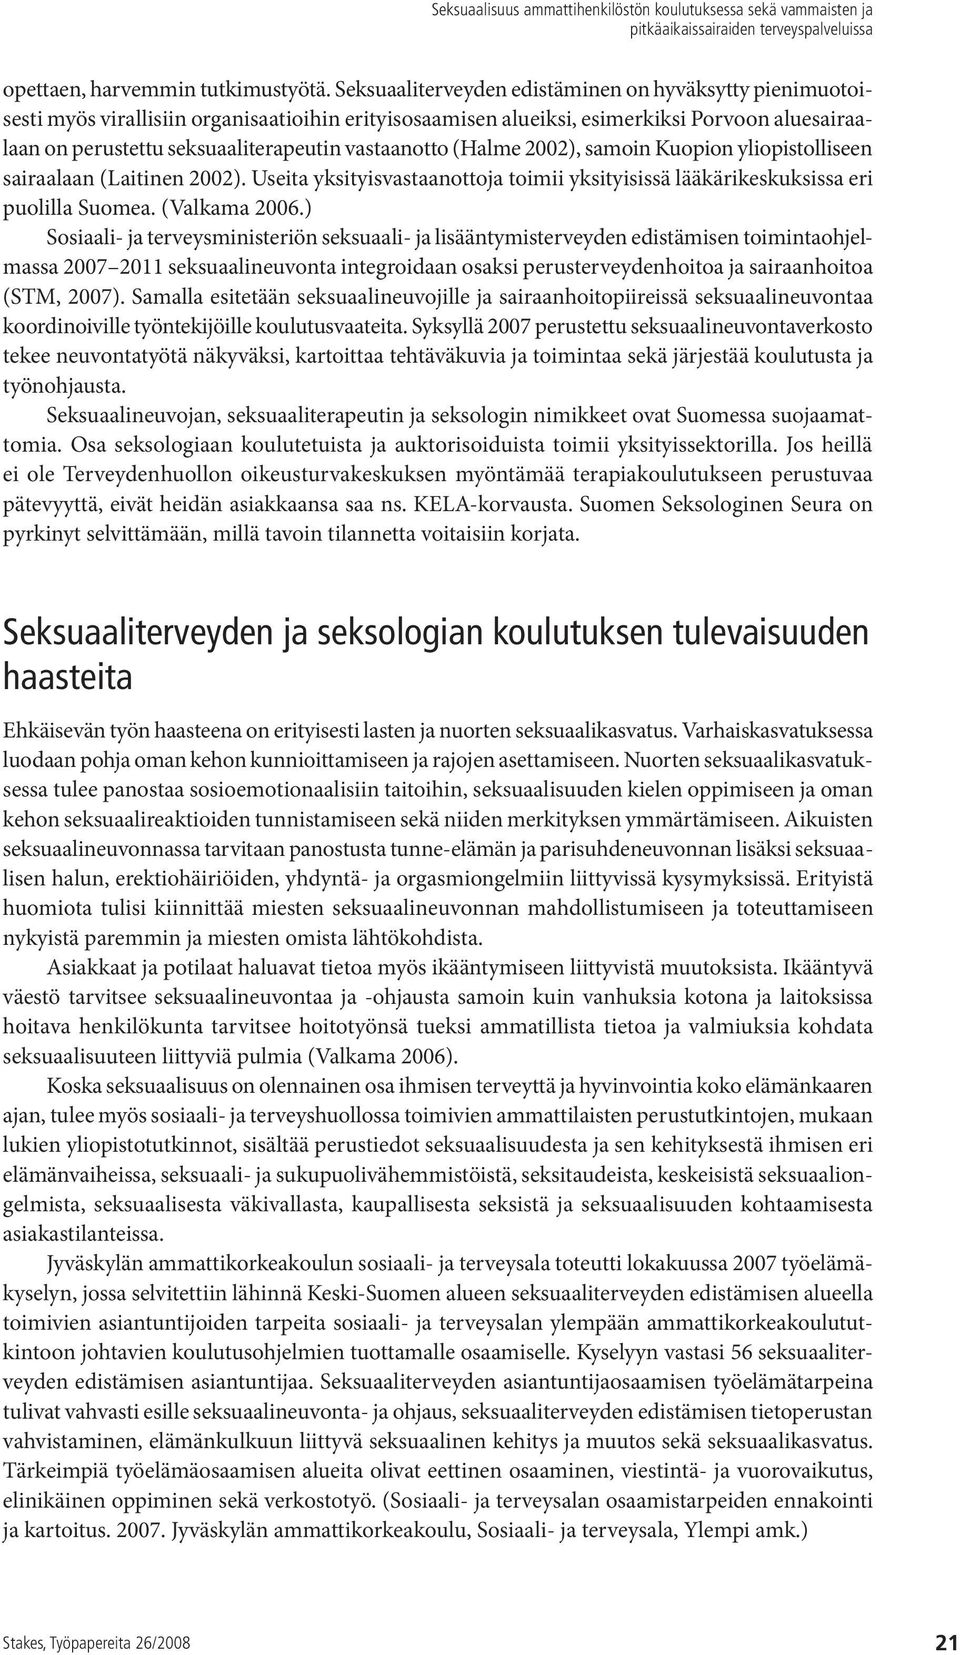 vastaanotto (Halme 2002), samoin Kuopion yliopistolliseen sairaalaan (Laitinen 2002). Useita yksityisvastaanottoja toimii yksityisissä lääkärikeskuksissa eri puolilla Suomea. (Valkama 2006.